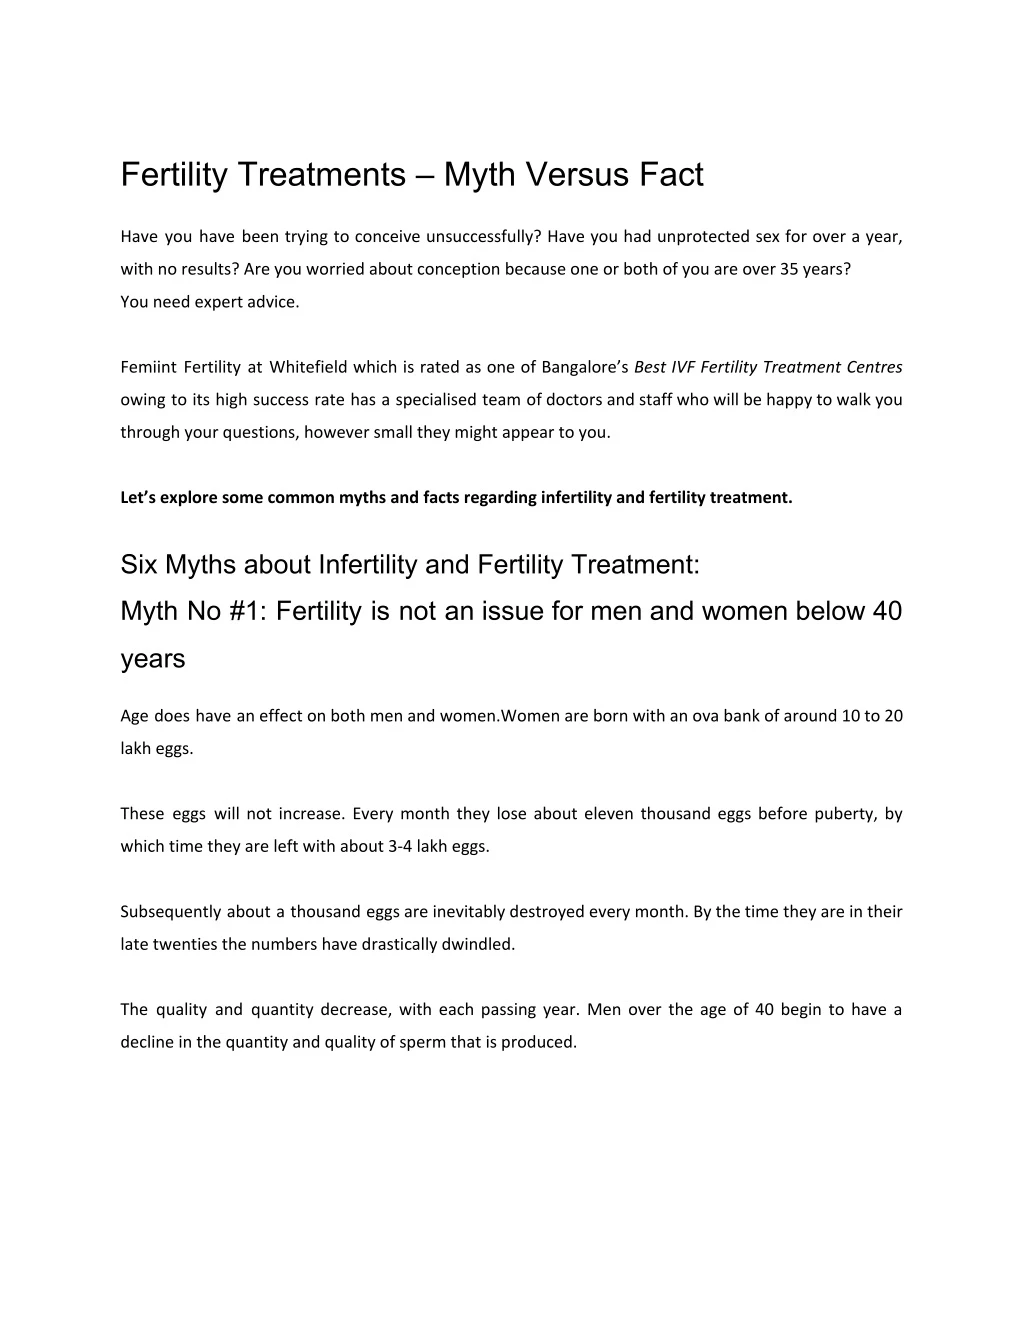 fertility treatments myth versus fact